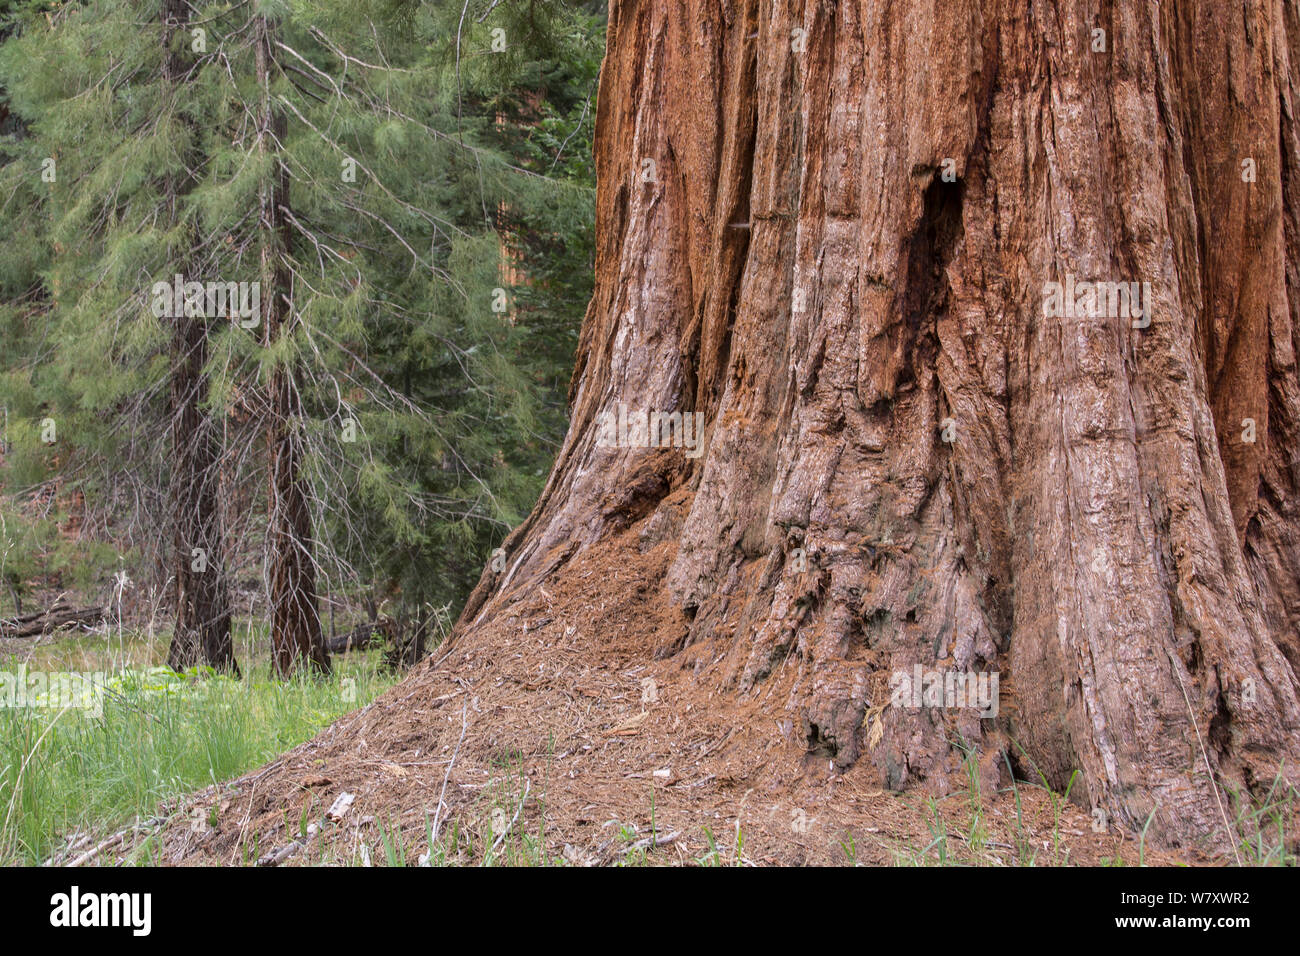 Giant sequoia (Sequoiadendron giganteum) tree trunk, Sierra Nevada, California, USA, May. Stock Photo